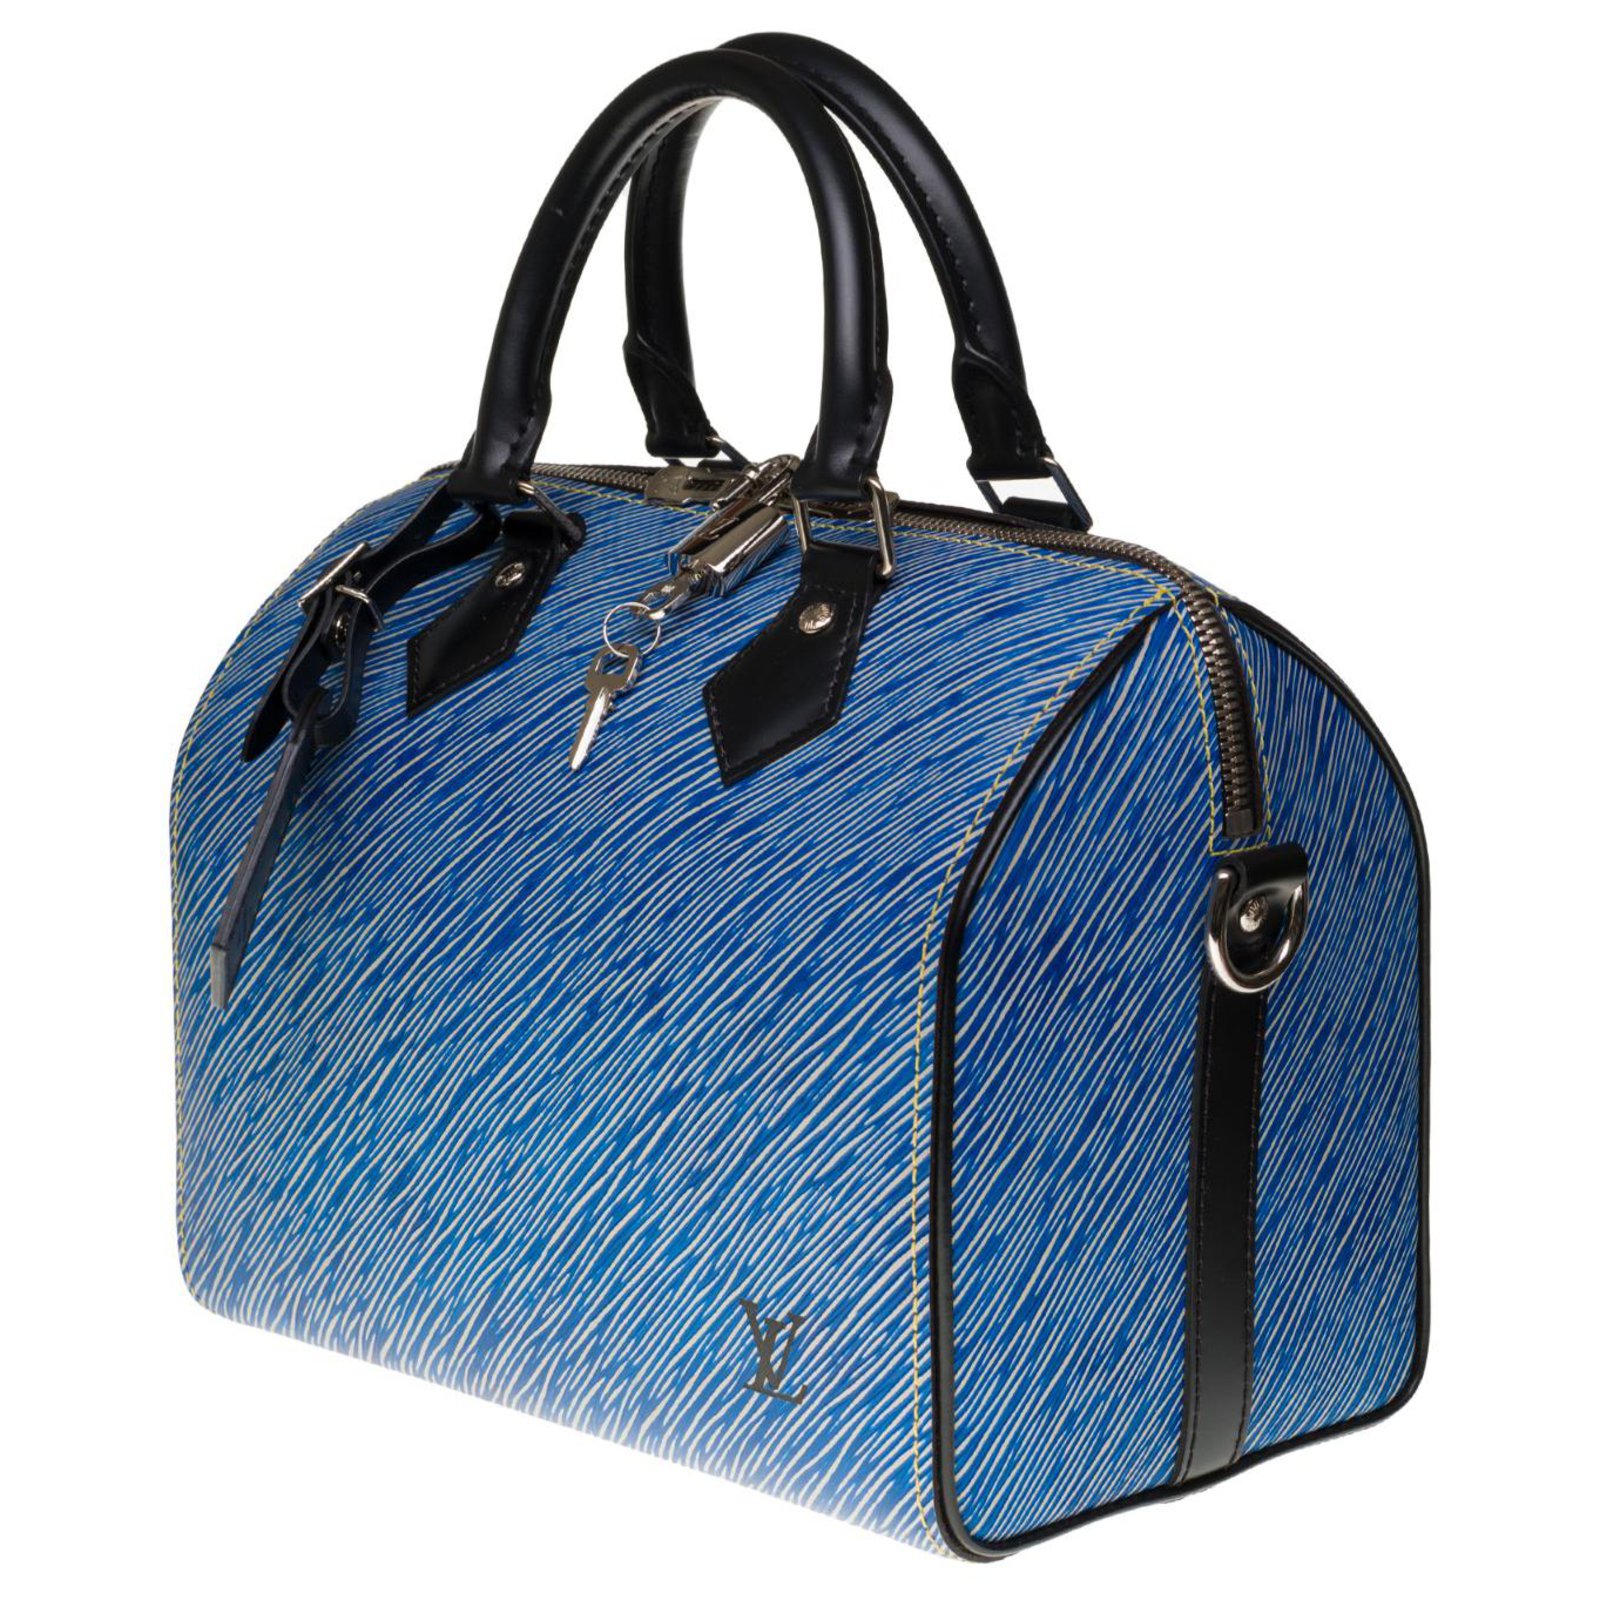 Authentic Louis Vuitton Blue Denim Speedy 25 Bag India